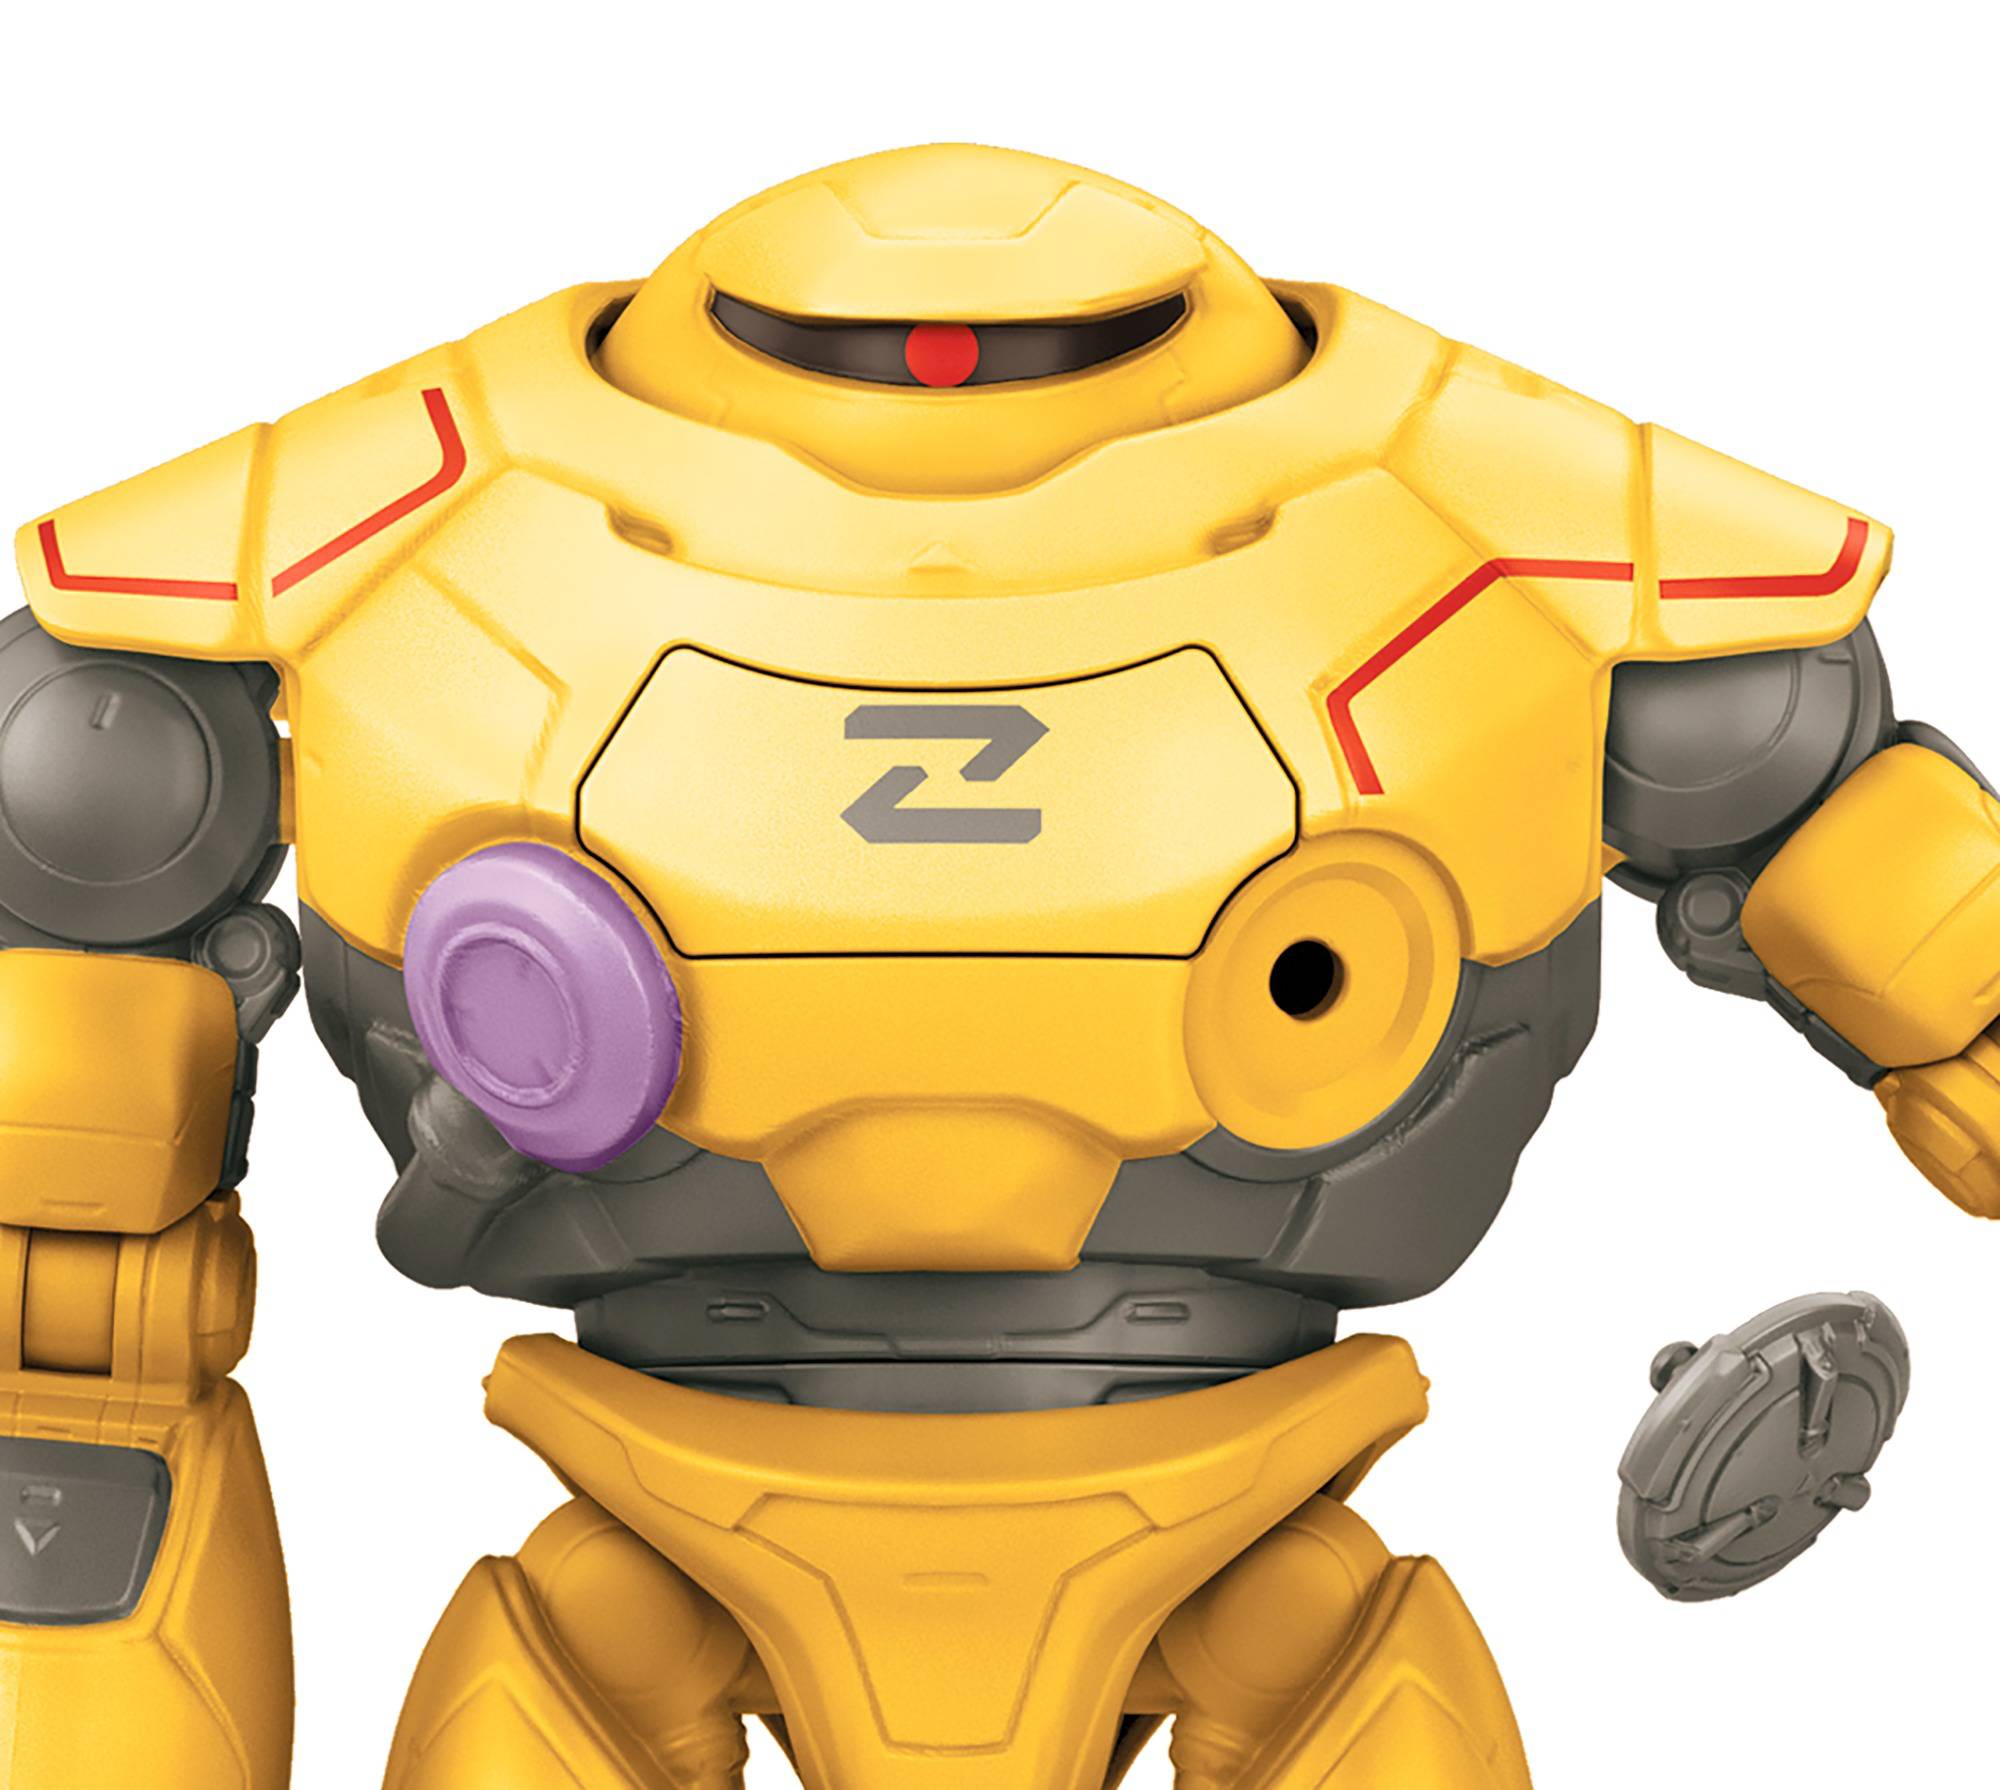 Disney pixar lightyear - zyclops personaggio equipaggiato per la battaglia, giocattolo per bambini 4+ anni, hhj87 - Lightyear